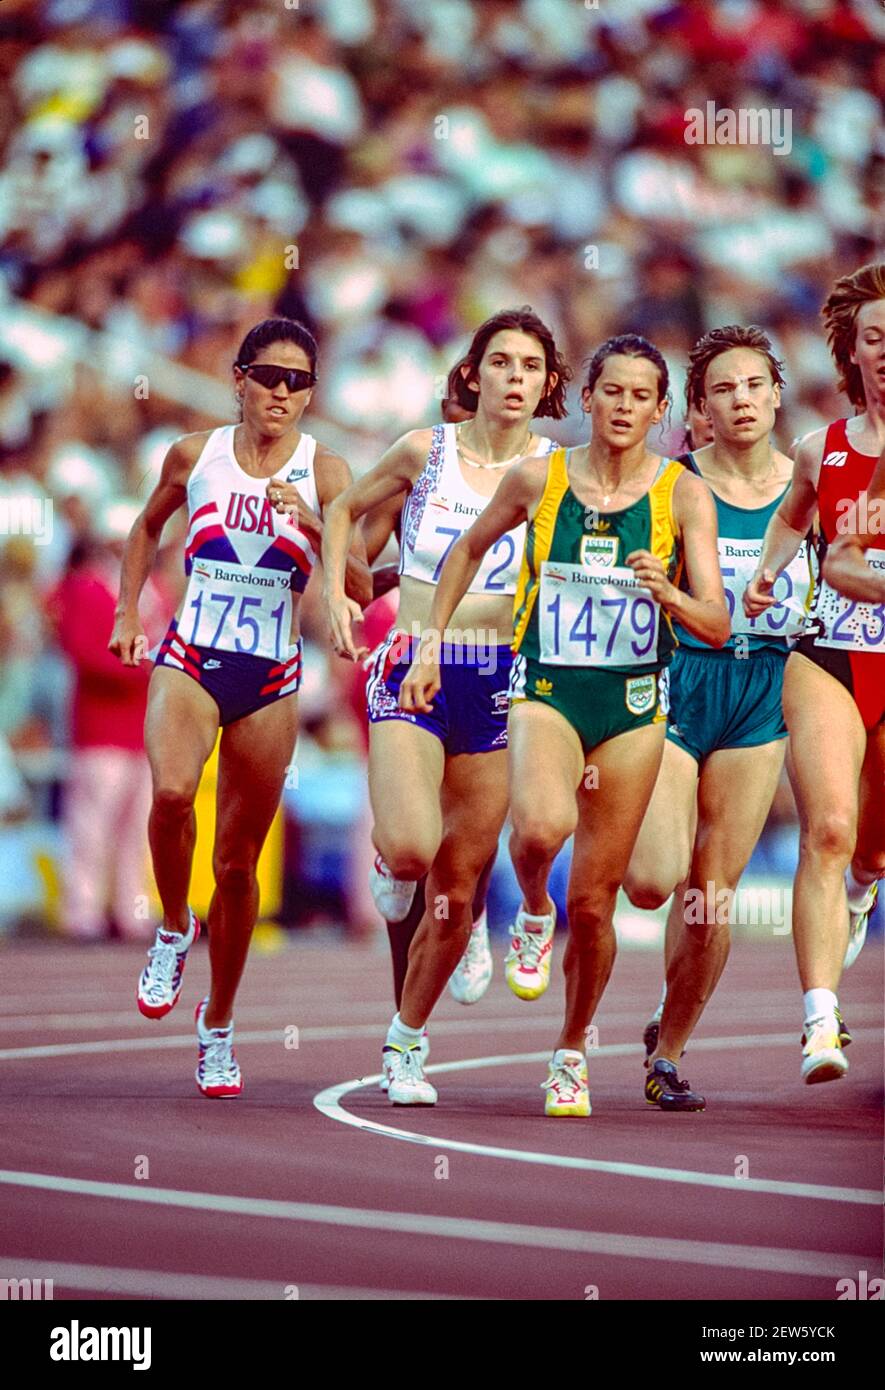 1751 Zola Pieterse (née Budd) RSA n. 1479 in competizione con i 3.000 m HT n. 1 delle donne ai Giochi Olimpici estivi del 1992. Foto Stock